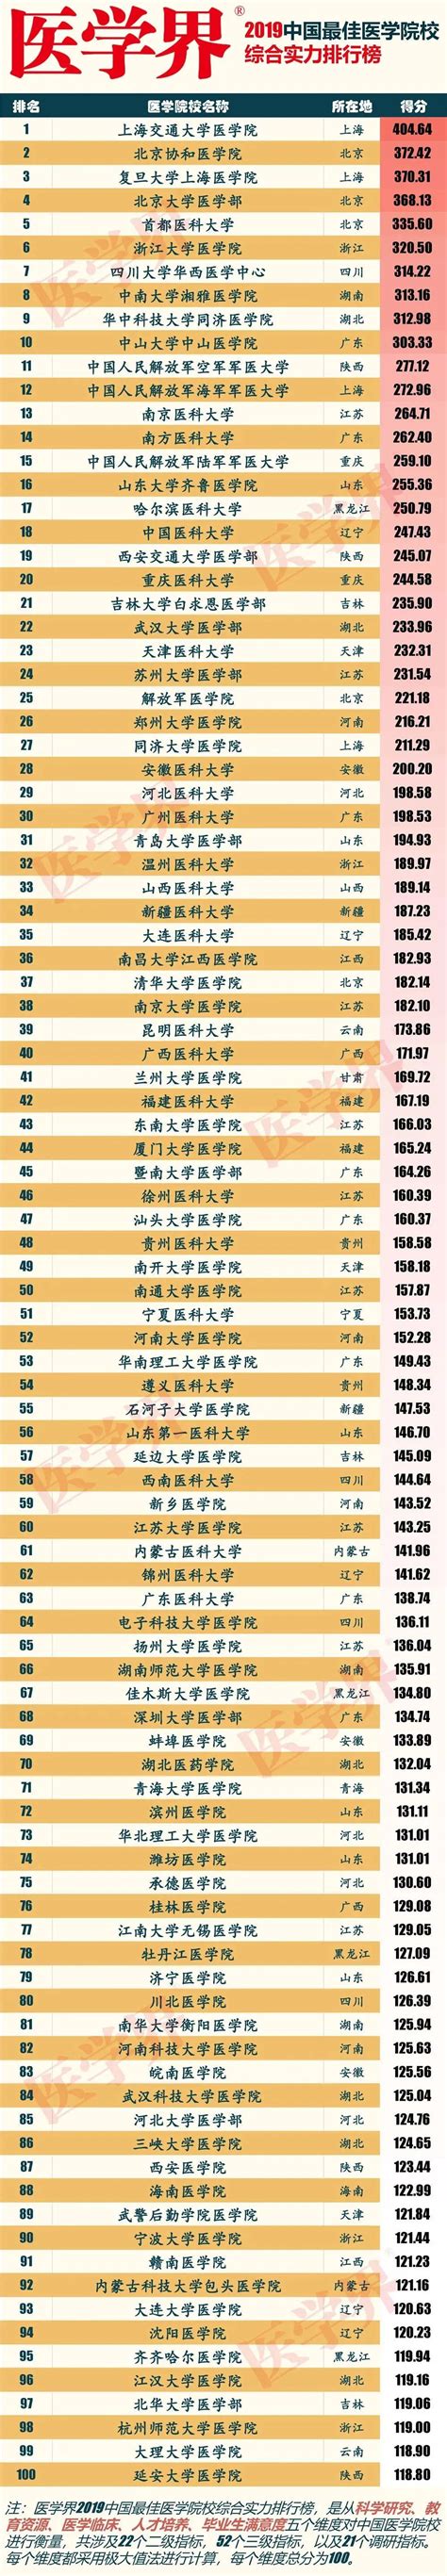 医学界2019中国最佳医学院校综合实力排行榜|医学院校|排行榜|医学|院校|实力|-健康界